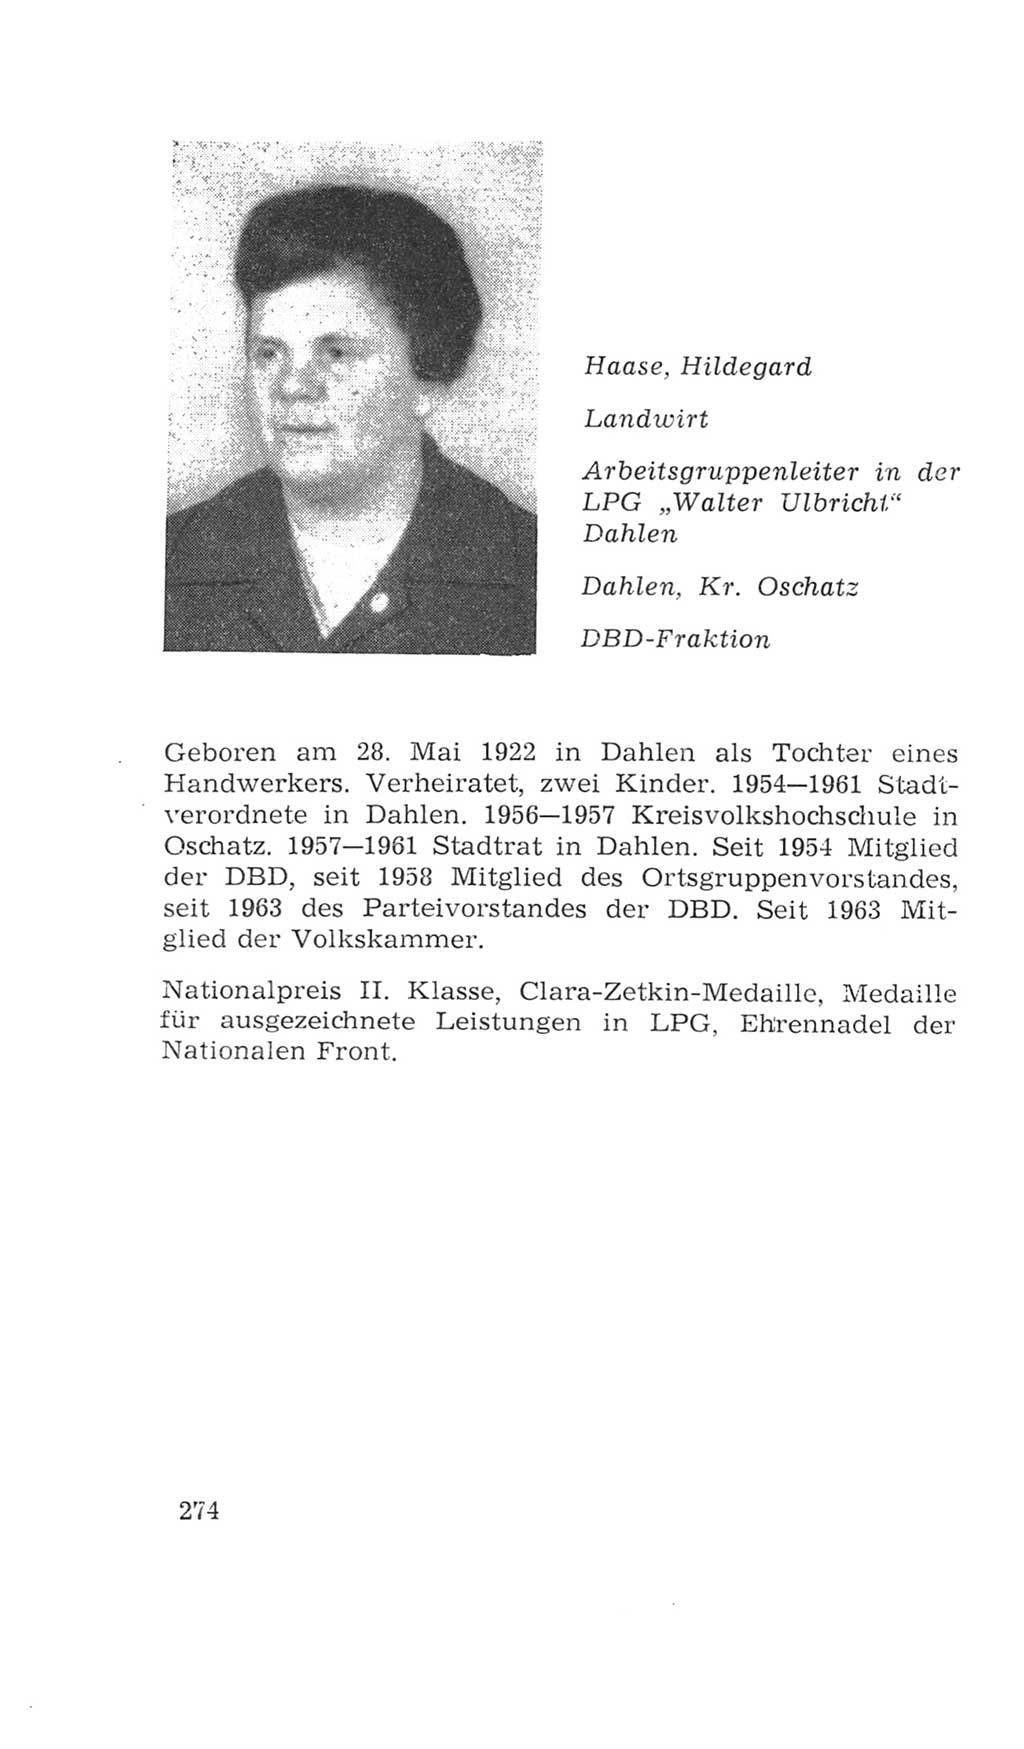 Volkskammer (VK) der Deutschen Demokratischen Republik (DDR), 4. Wahlperiode 1963-1967, Seite 274 (VK. DDR 4. WP. 1963-1967, S. 274)